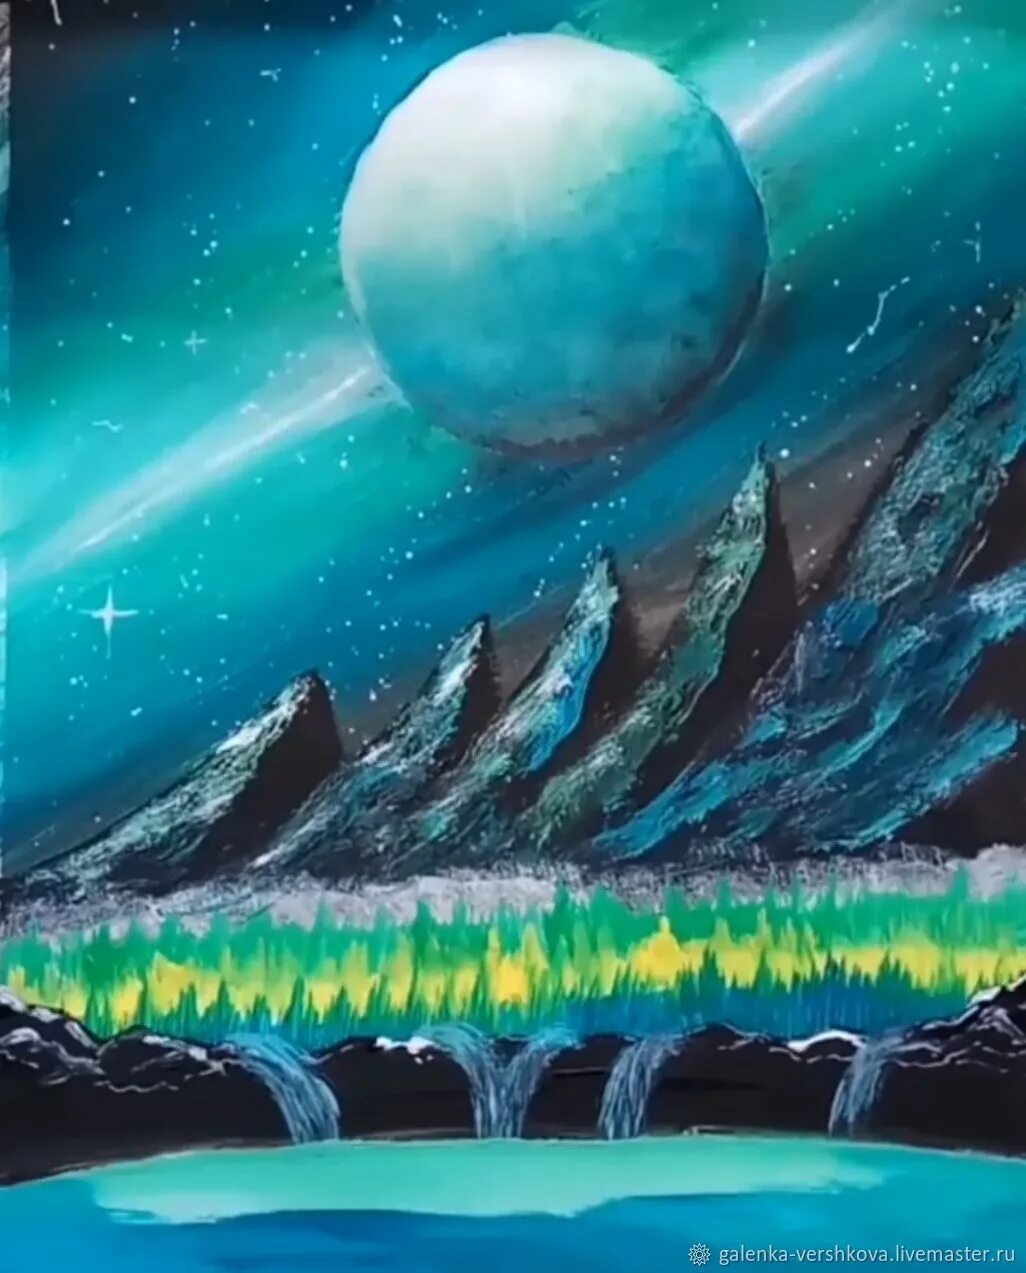 Произведение космический пейзаж. Иллюстрация к произведению Чарльза Айвза космический пейзаж. Чарлз Айвз "космический пейзаж. Космос рисунок.